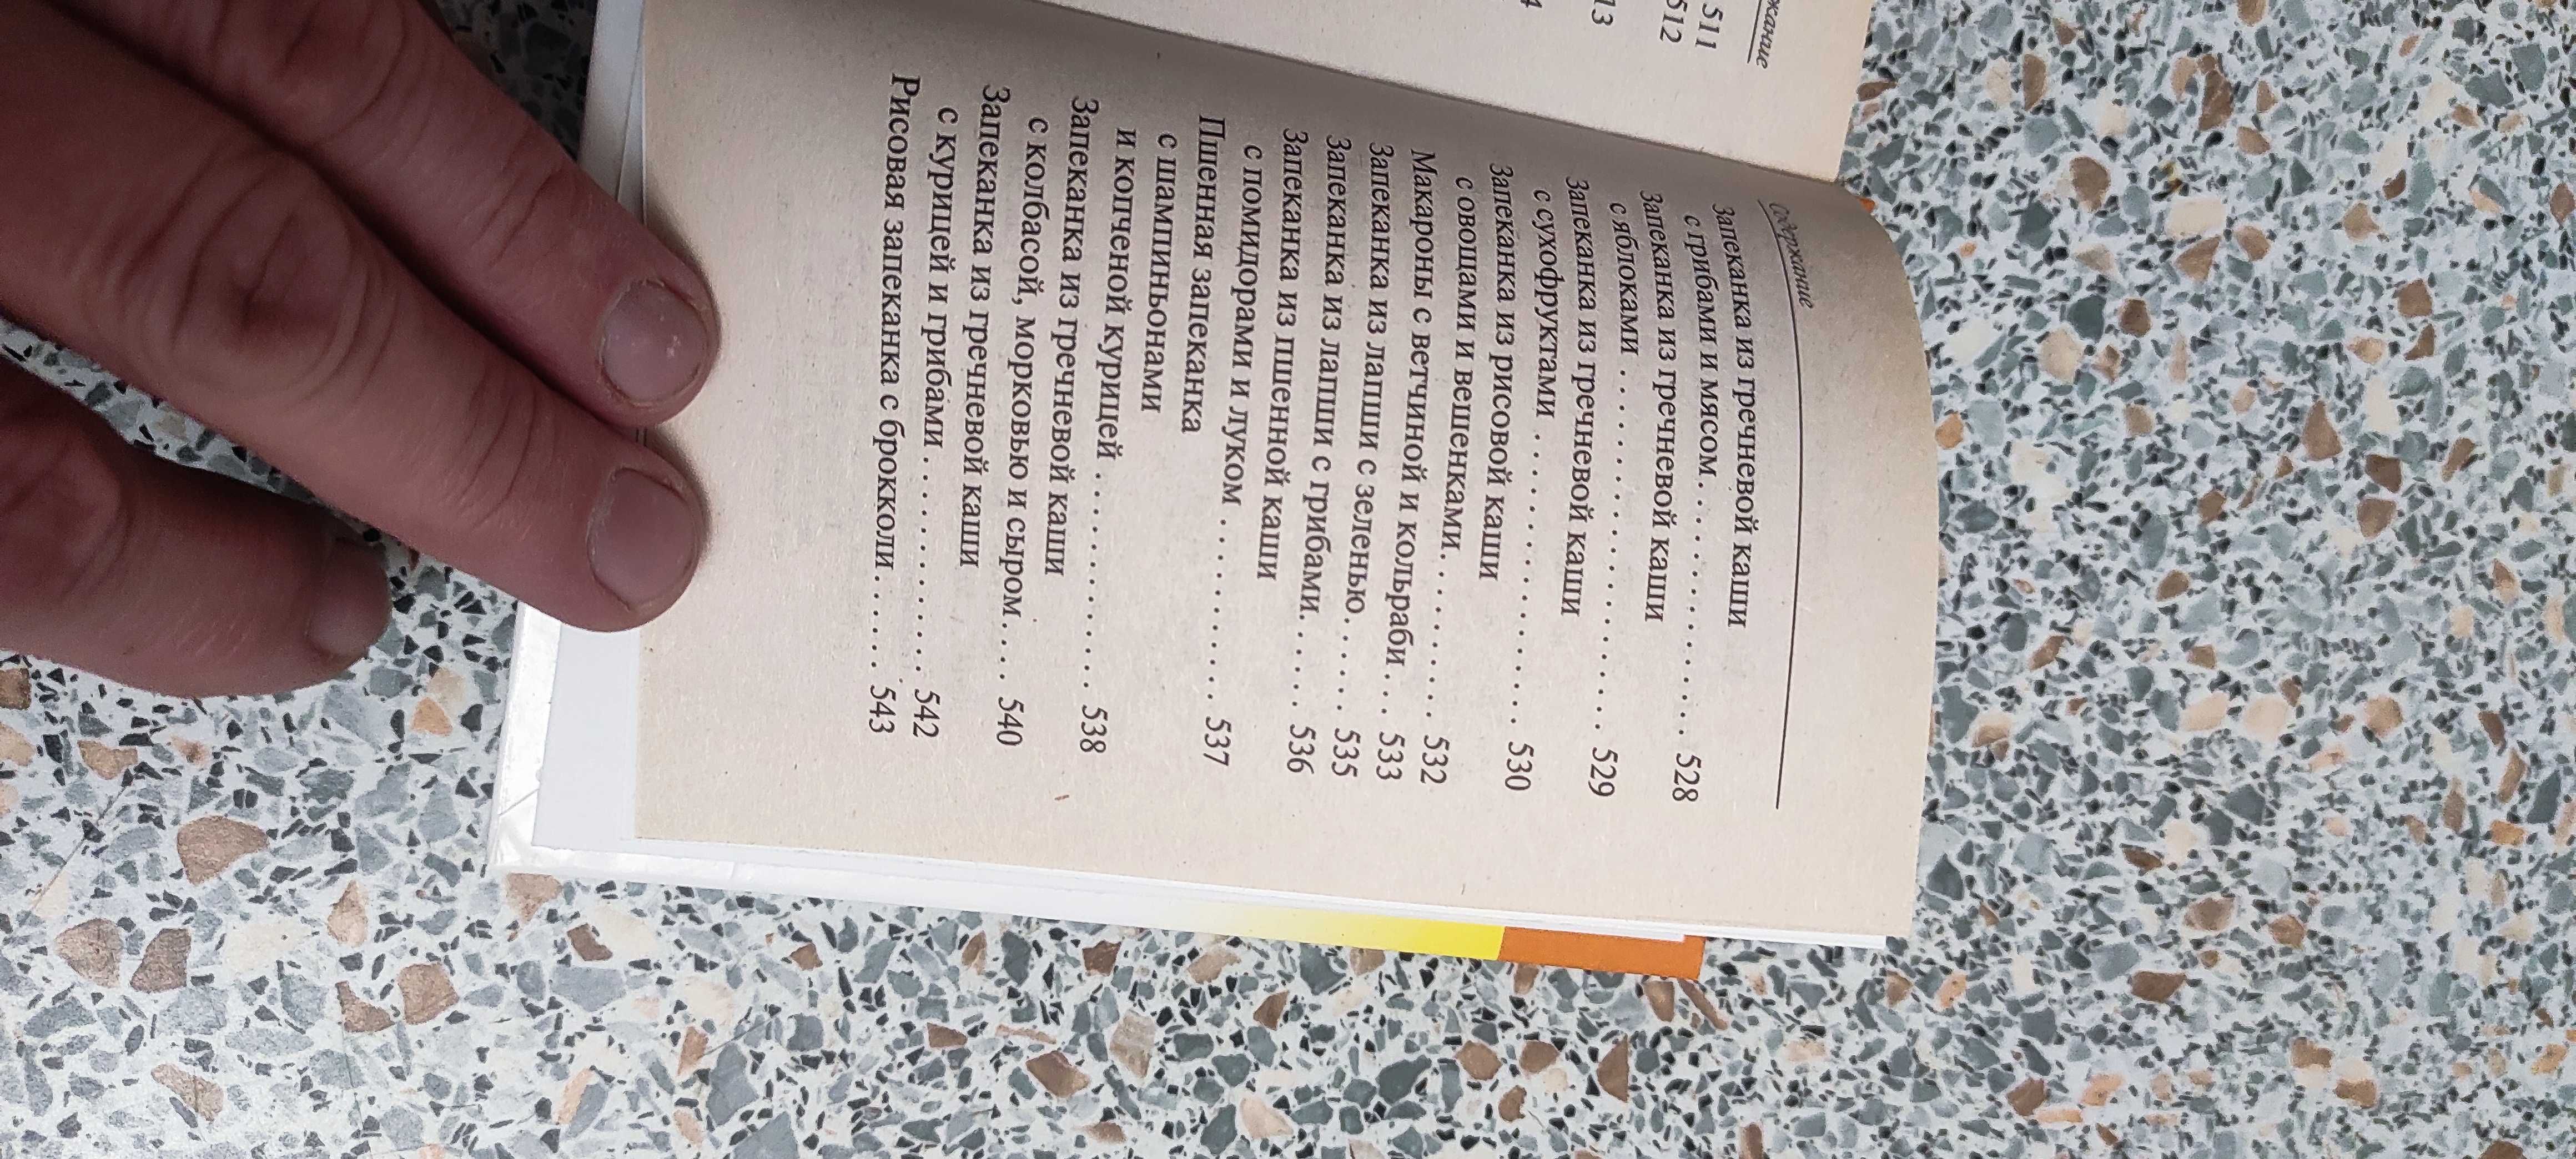 Книга "Чудо блюда в глиняных горшочках" 543 рецепта